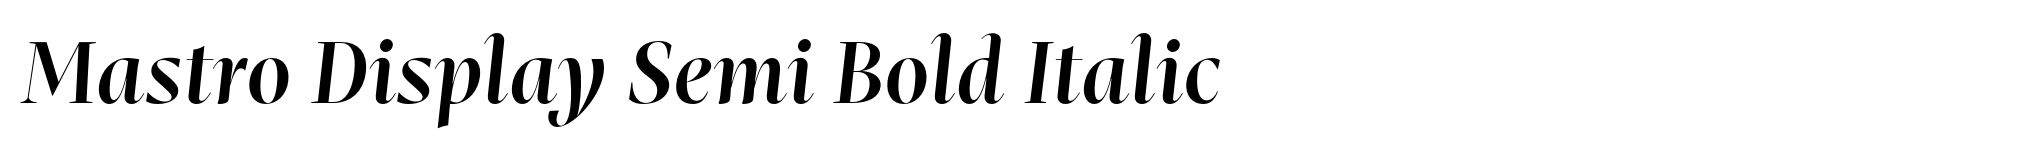 Mastro Display Semi Bold Italic image